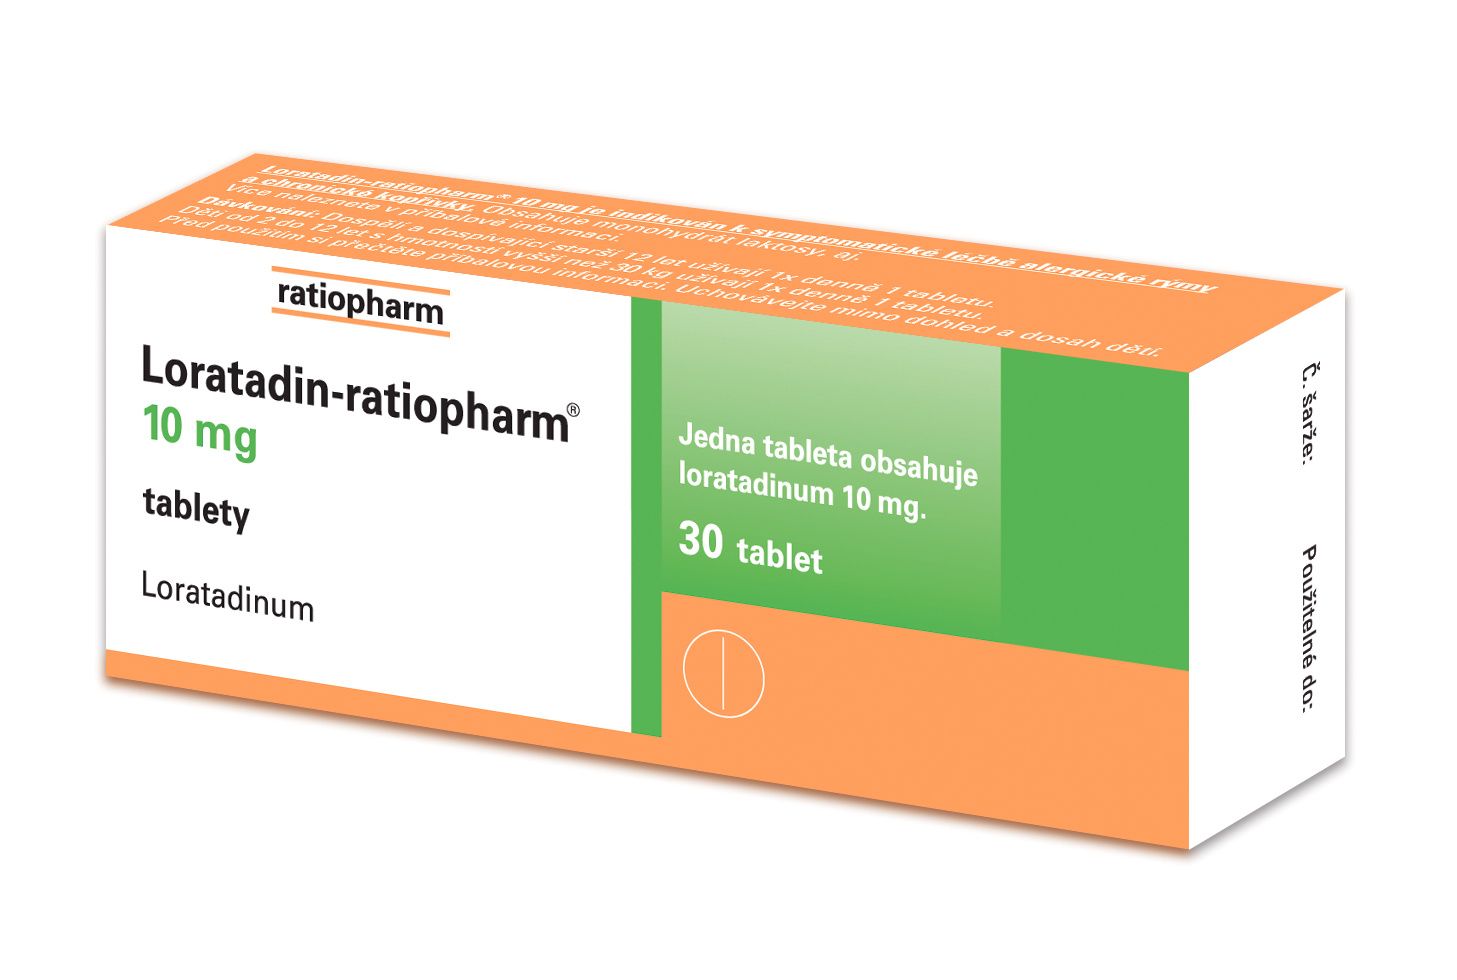 Loratadin-ratiopharm 10 mg 30 tablet